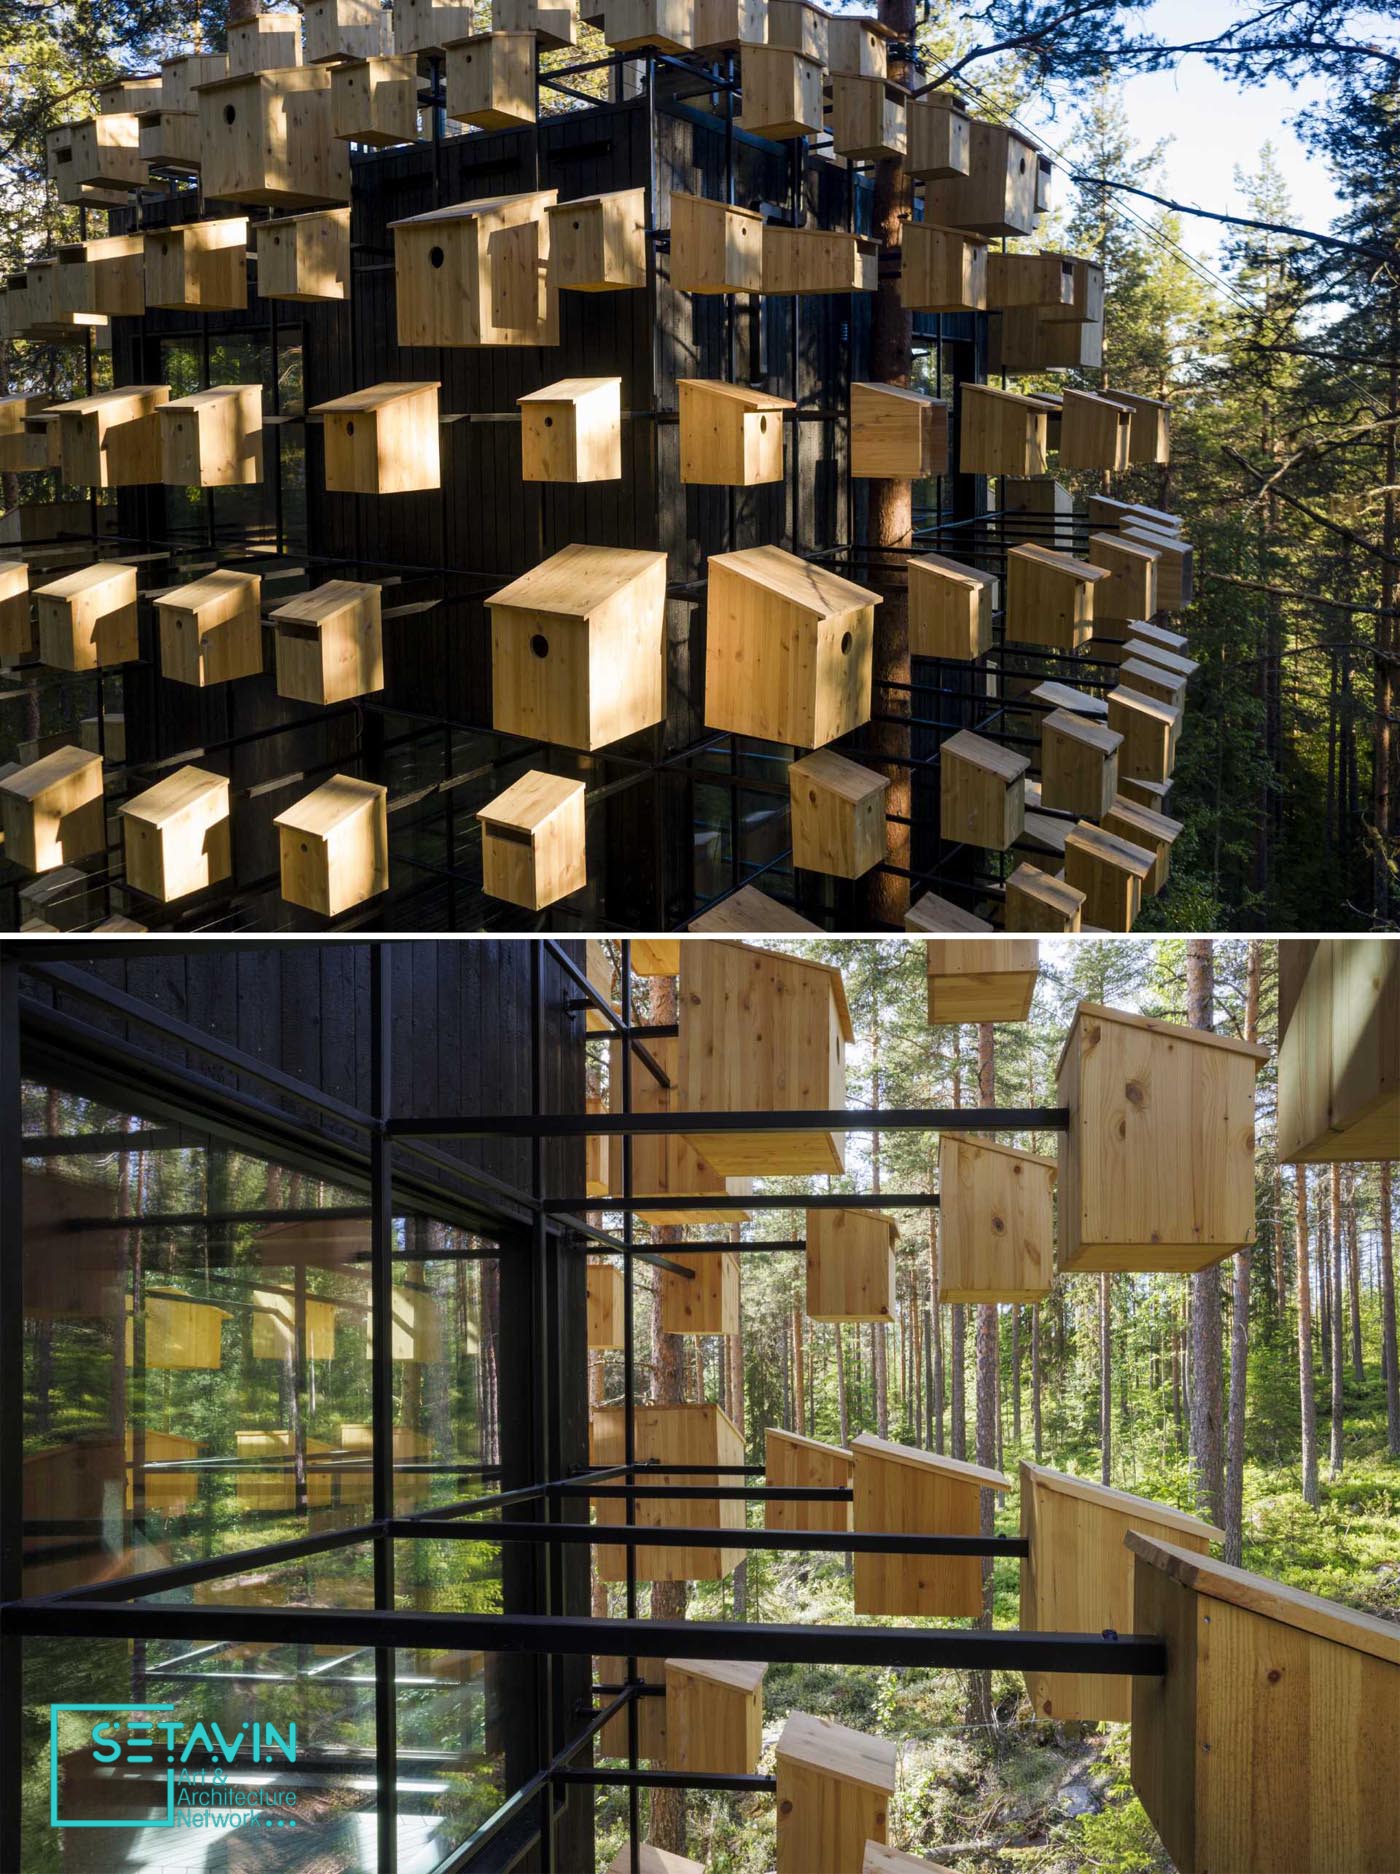 اتاق هتلی با 350 خانه پرنده در جنگلهای سوئد